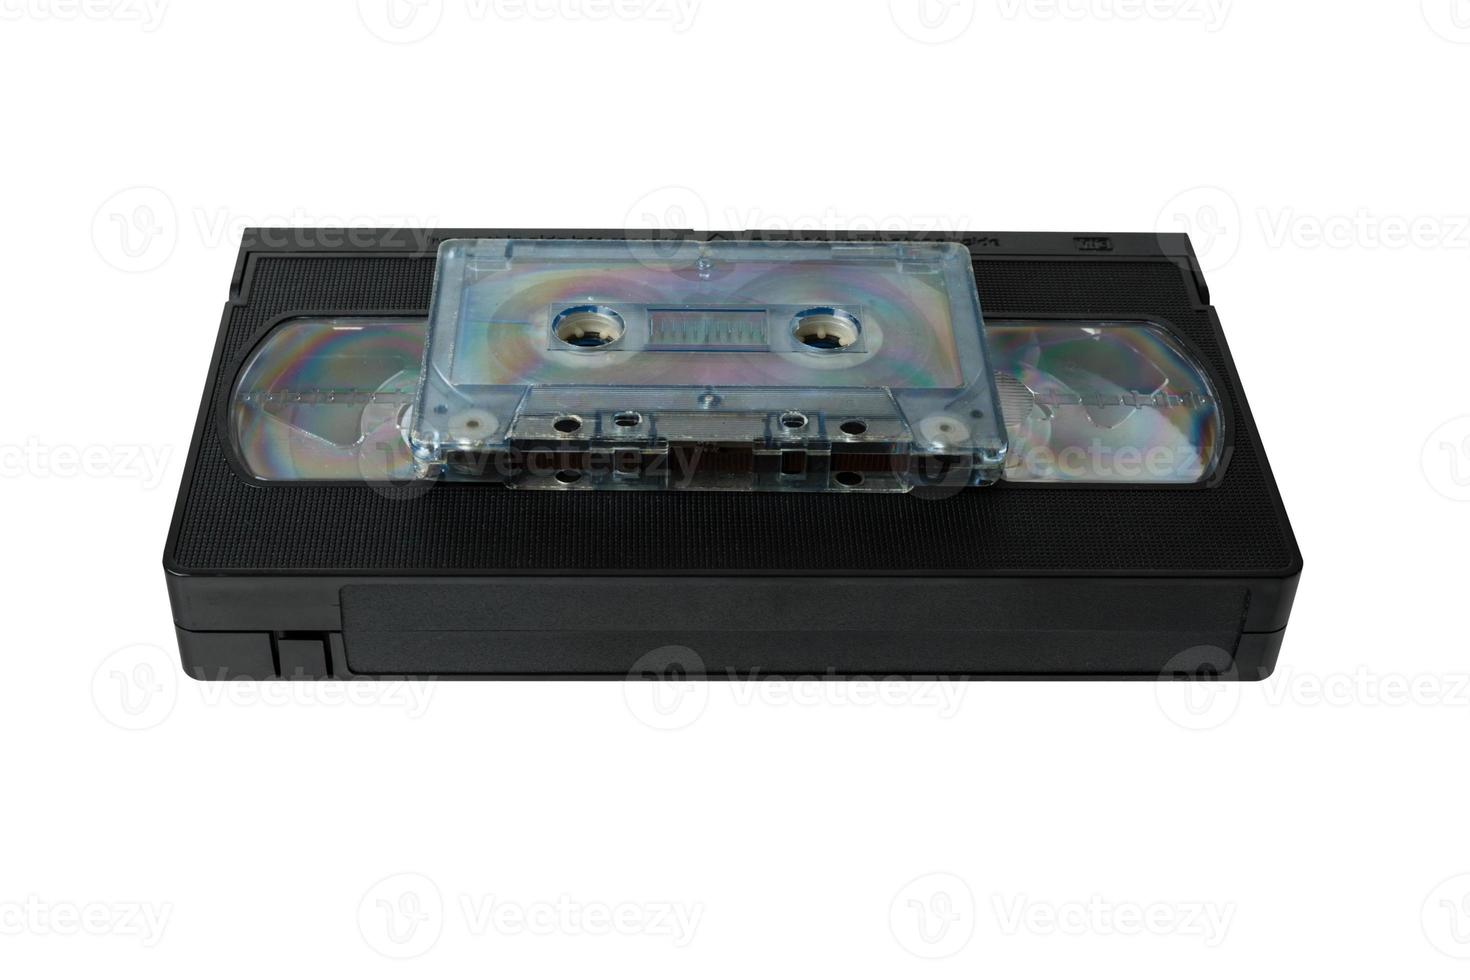 audio tejp kassett och vhs video tejp kassett isolerat på vit bakgrund foto